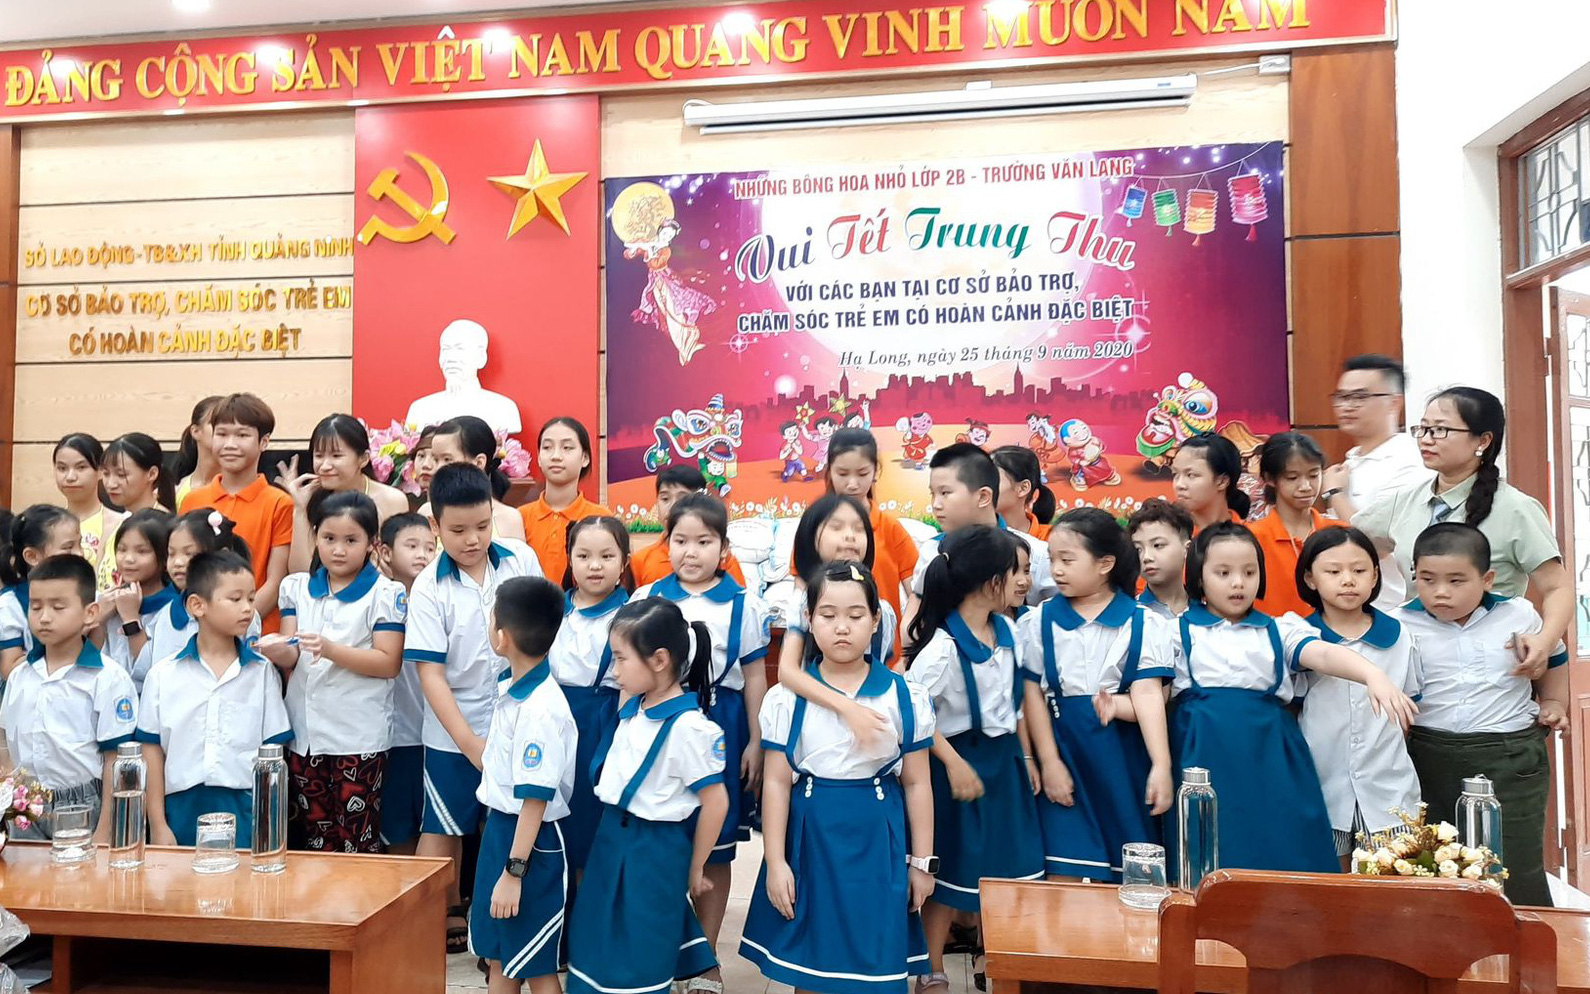 Trung thu ấm lòng nhân ái ở Trung tâm bảo trợ trẻ em Quảng Ninh